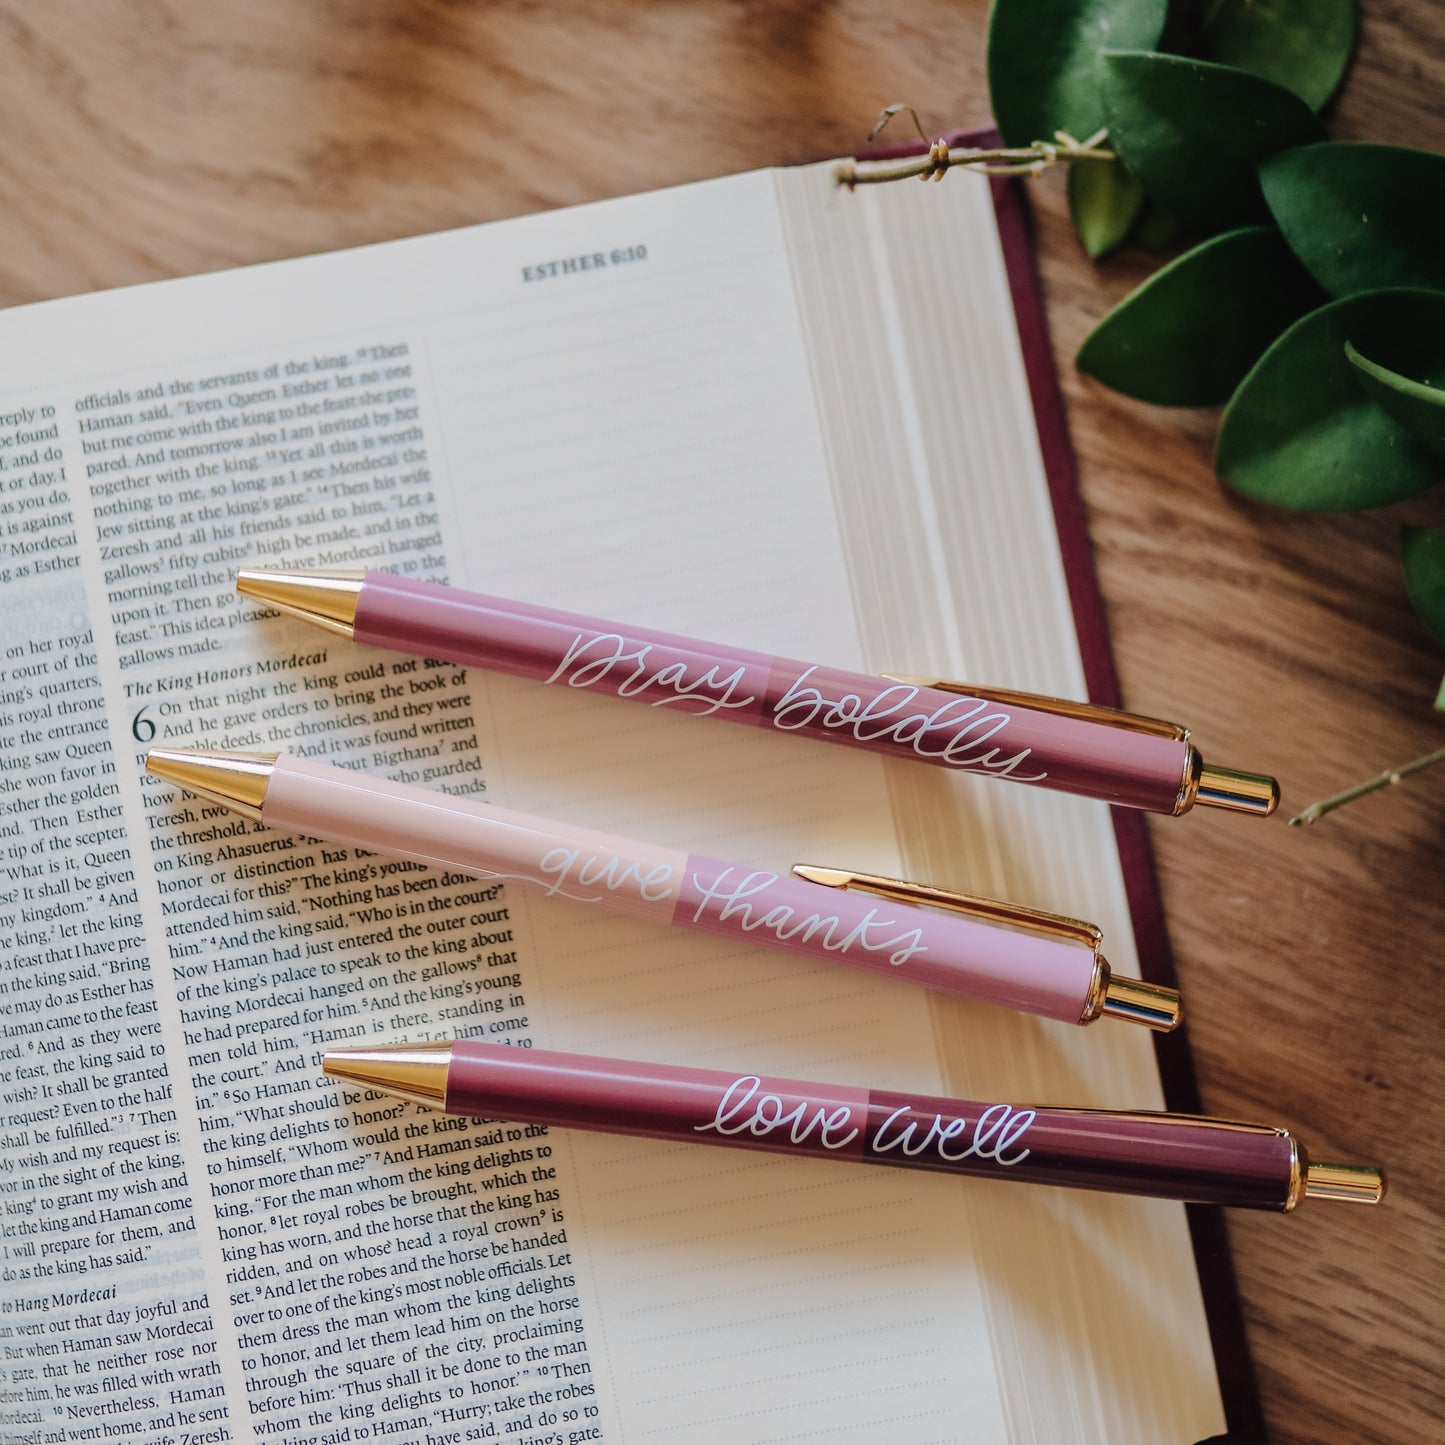 Floral Pen Set – The Daily Grace Co.